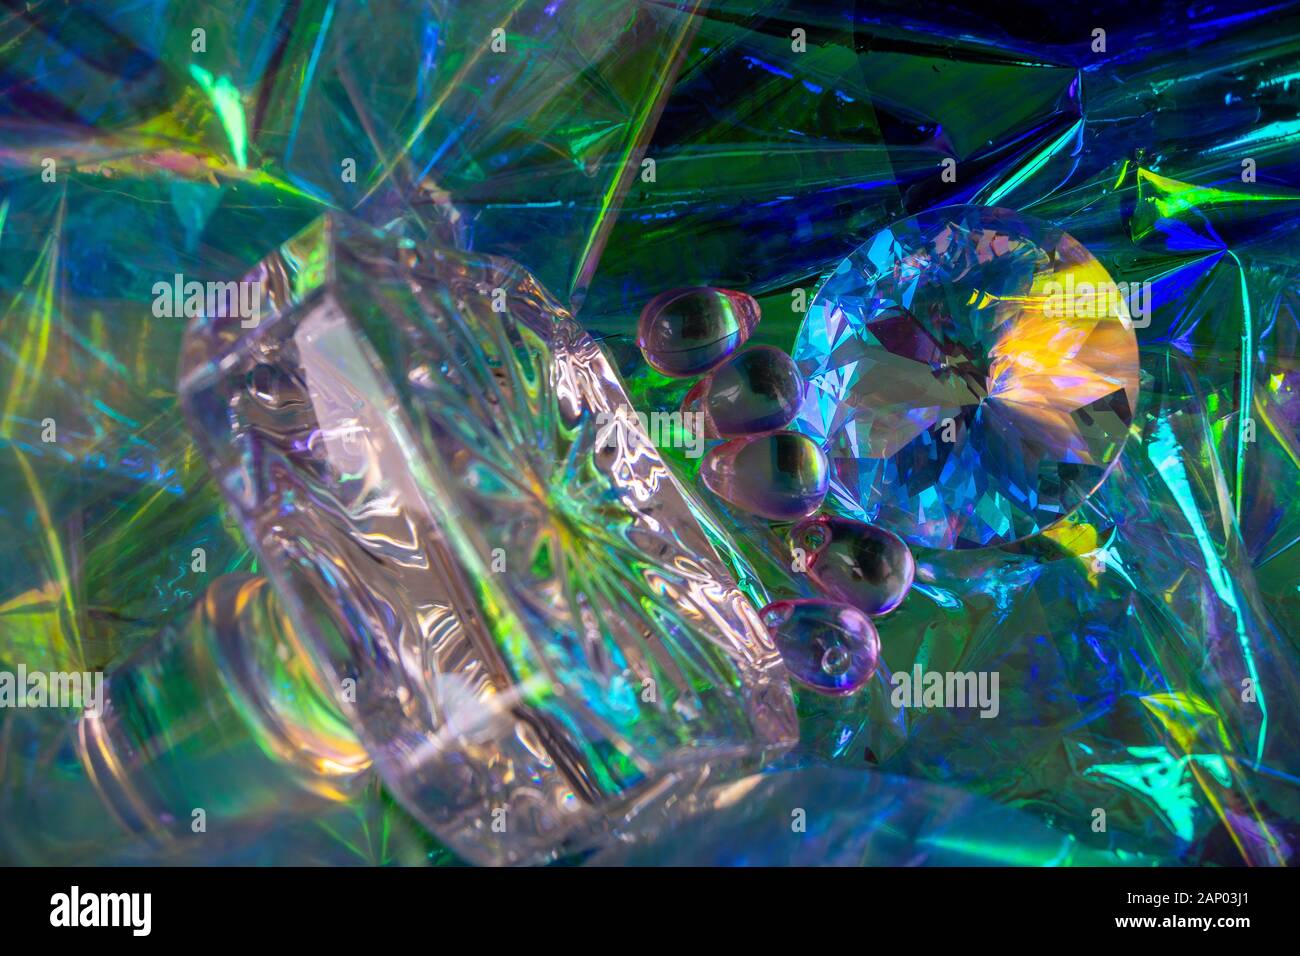 Abstrait 15, un cristal et un objet en verre découpés montrant la lumière réfractée un motif aléatoire, principalement bleu Banque D'Images